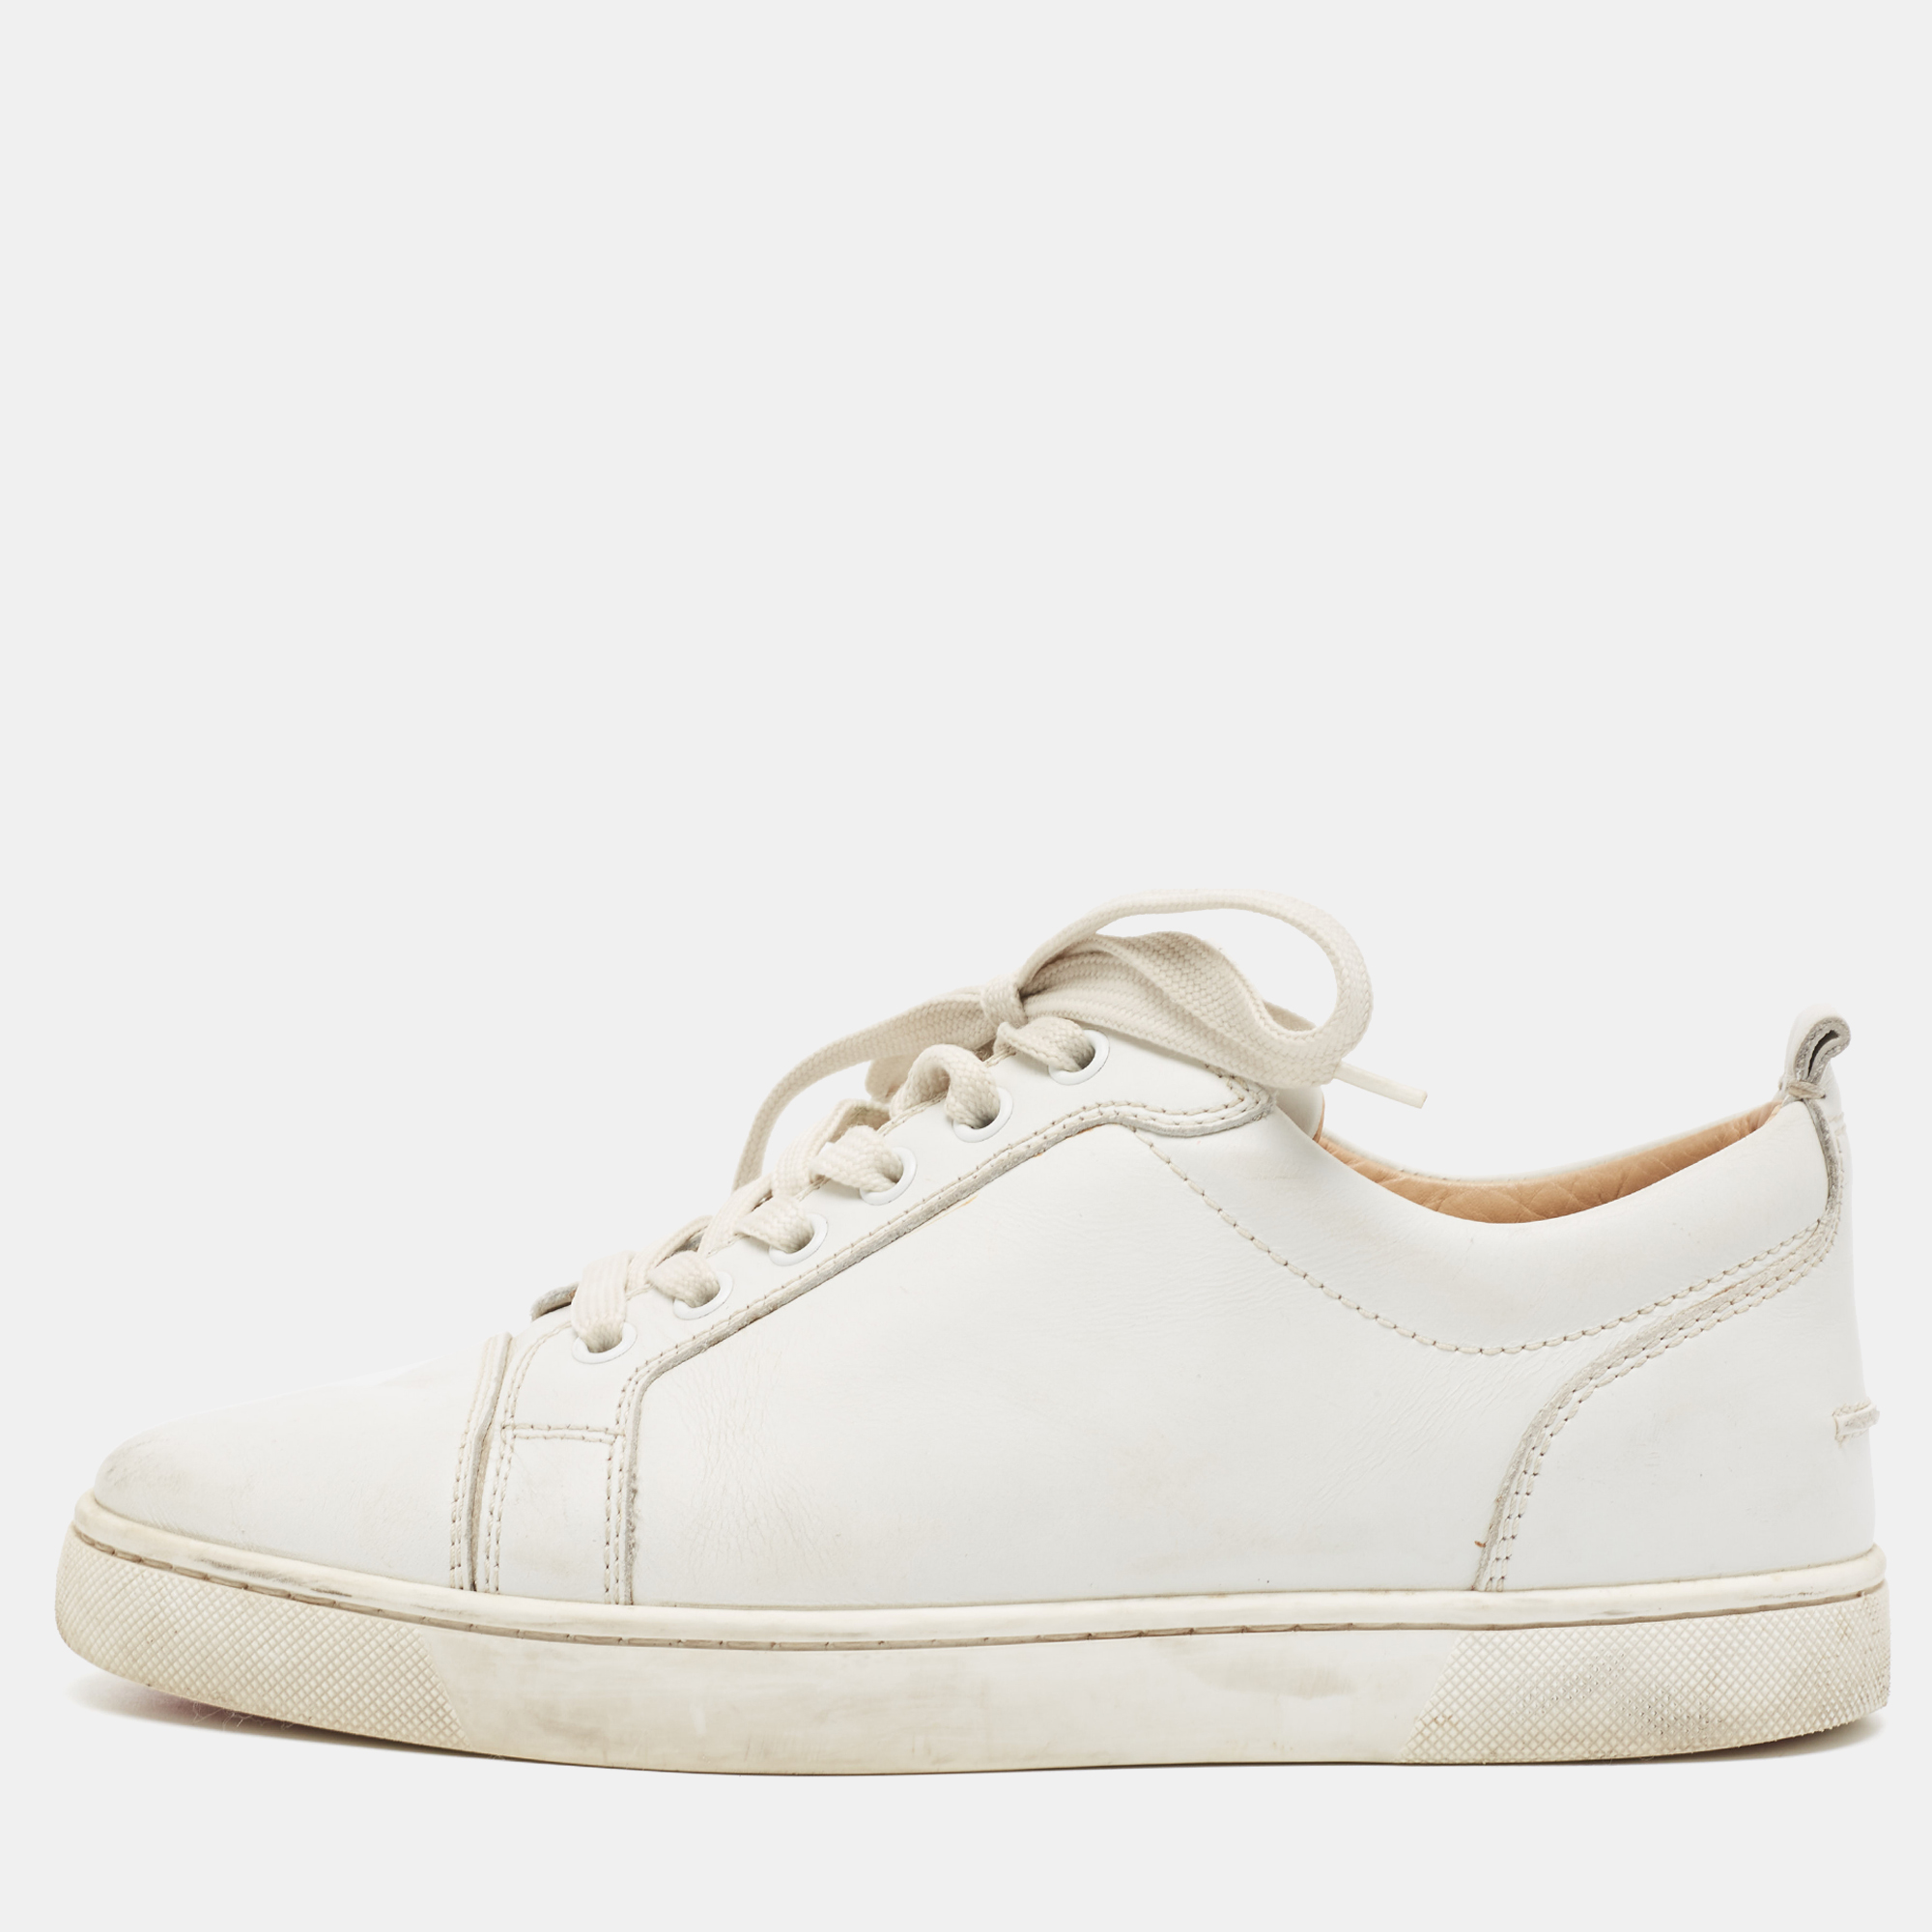 Christian louboutin white leather vieira low top sneakers size 39